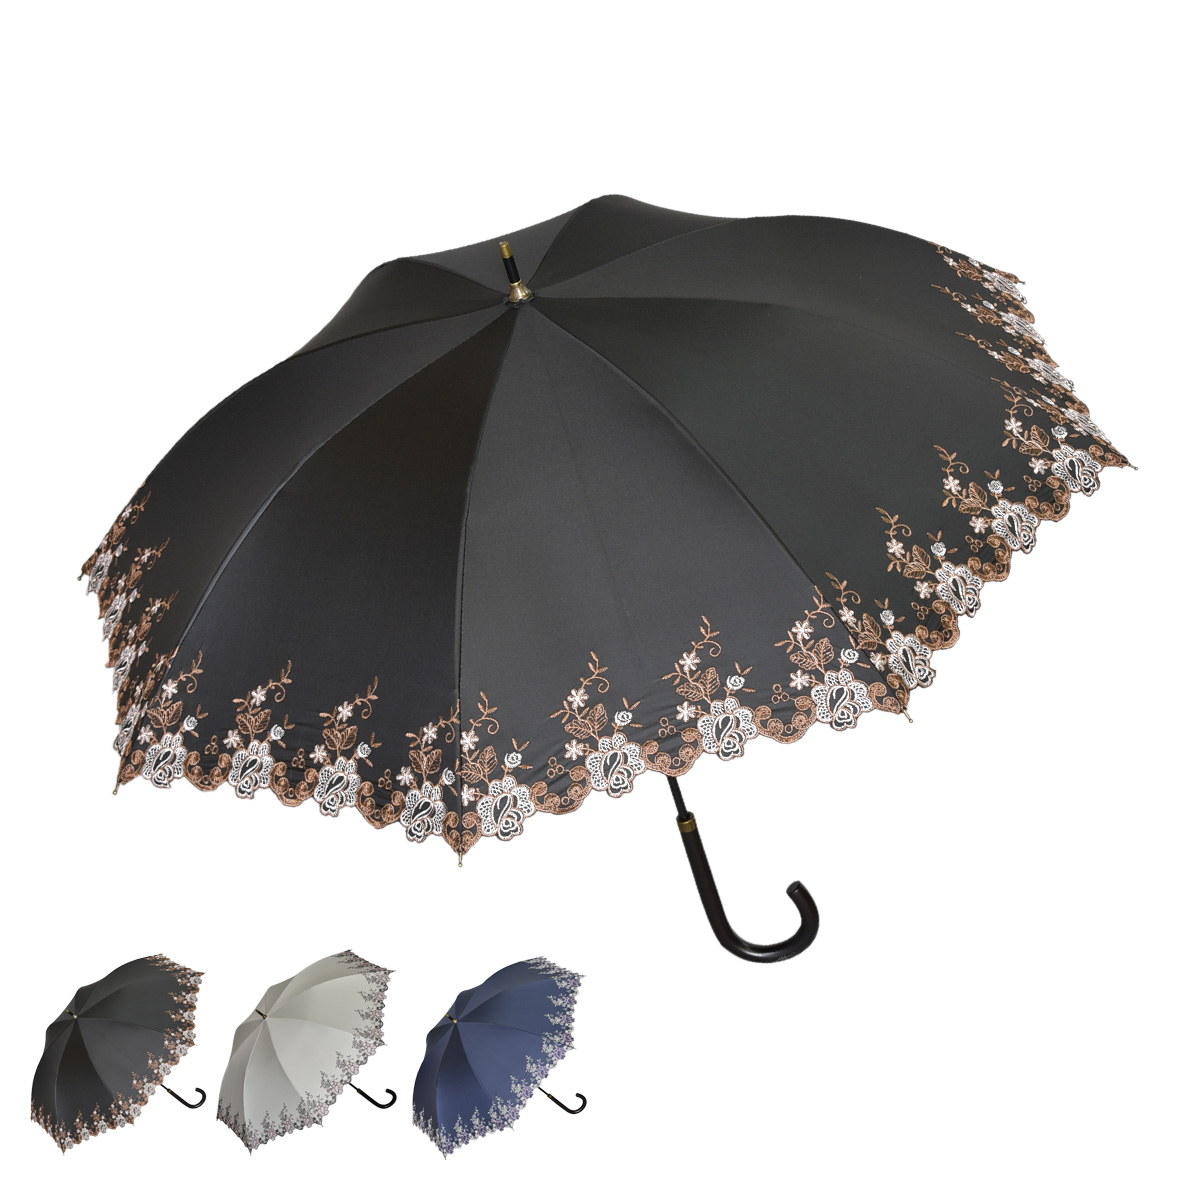 Genuine Umbrella 日傘 アンブレラ 軽量 レディース 晴雨兼用 99 Uvカット ジェニュイン 015s ワークス Works 長傘